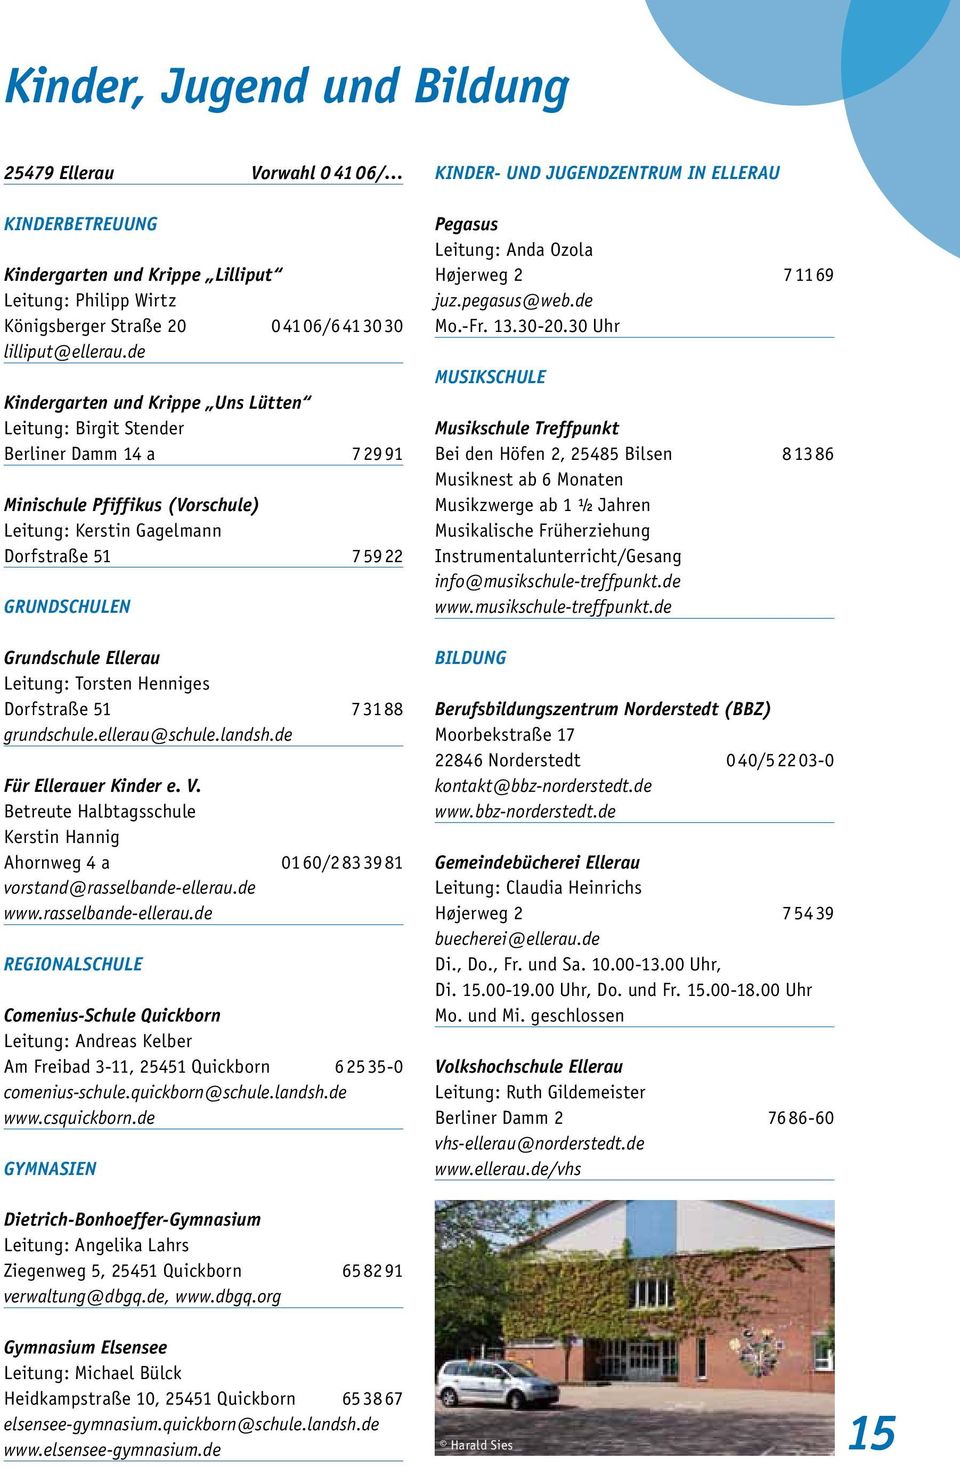 Gemeinde Ellerau Bürgerinformationen 2014 Pdf Free Download